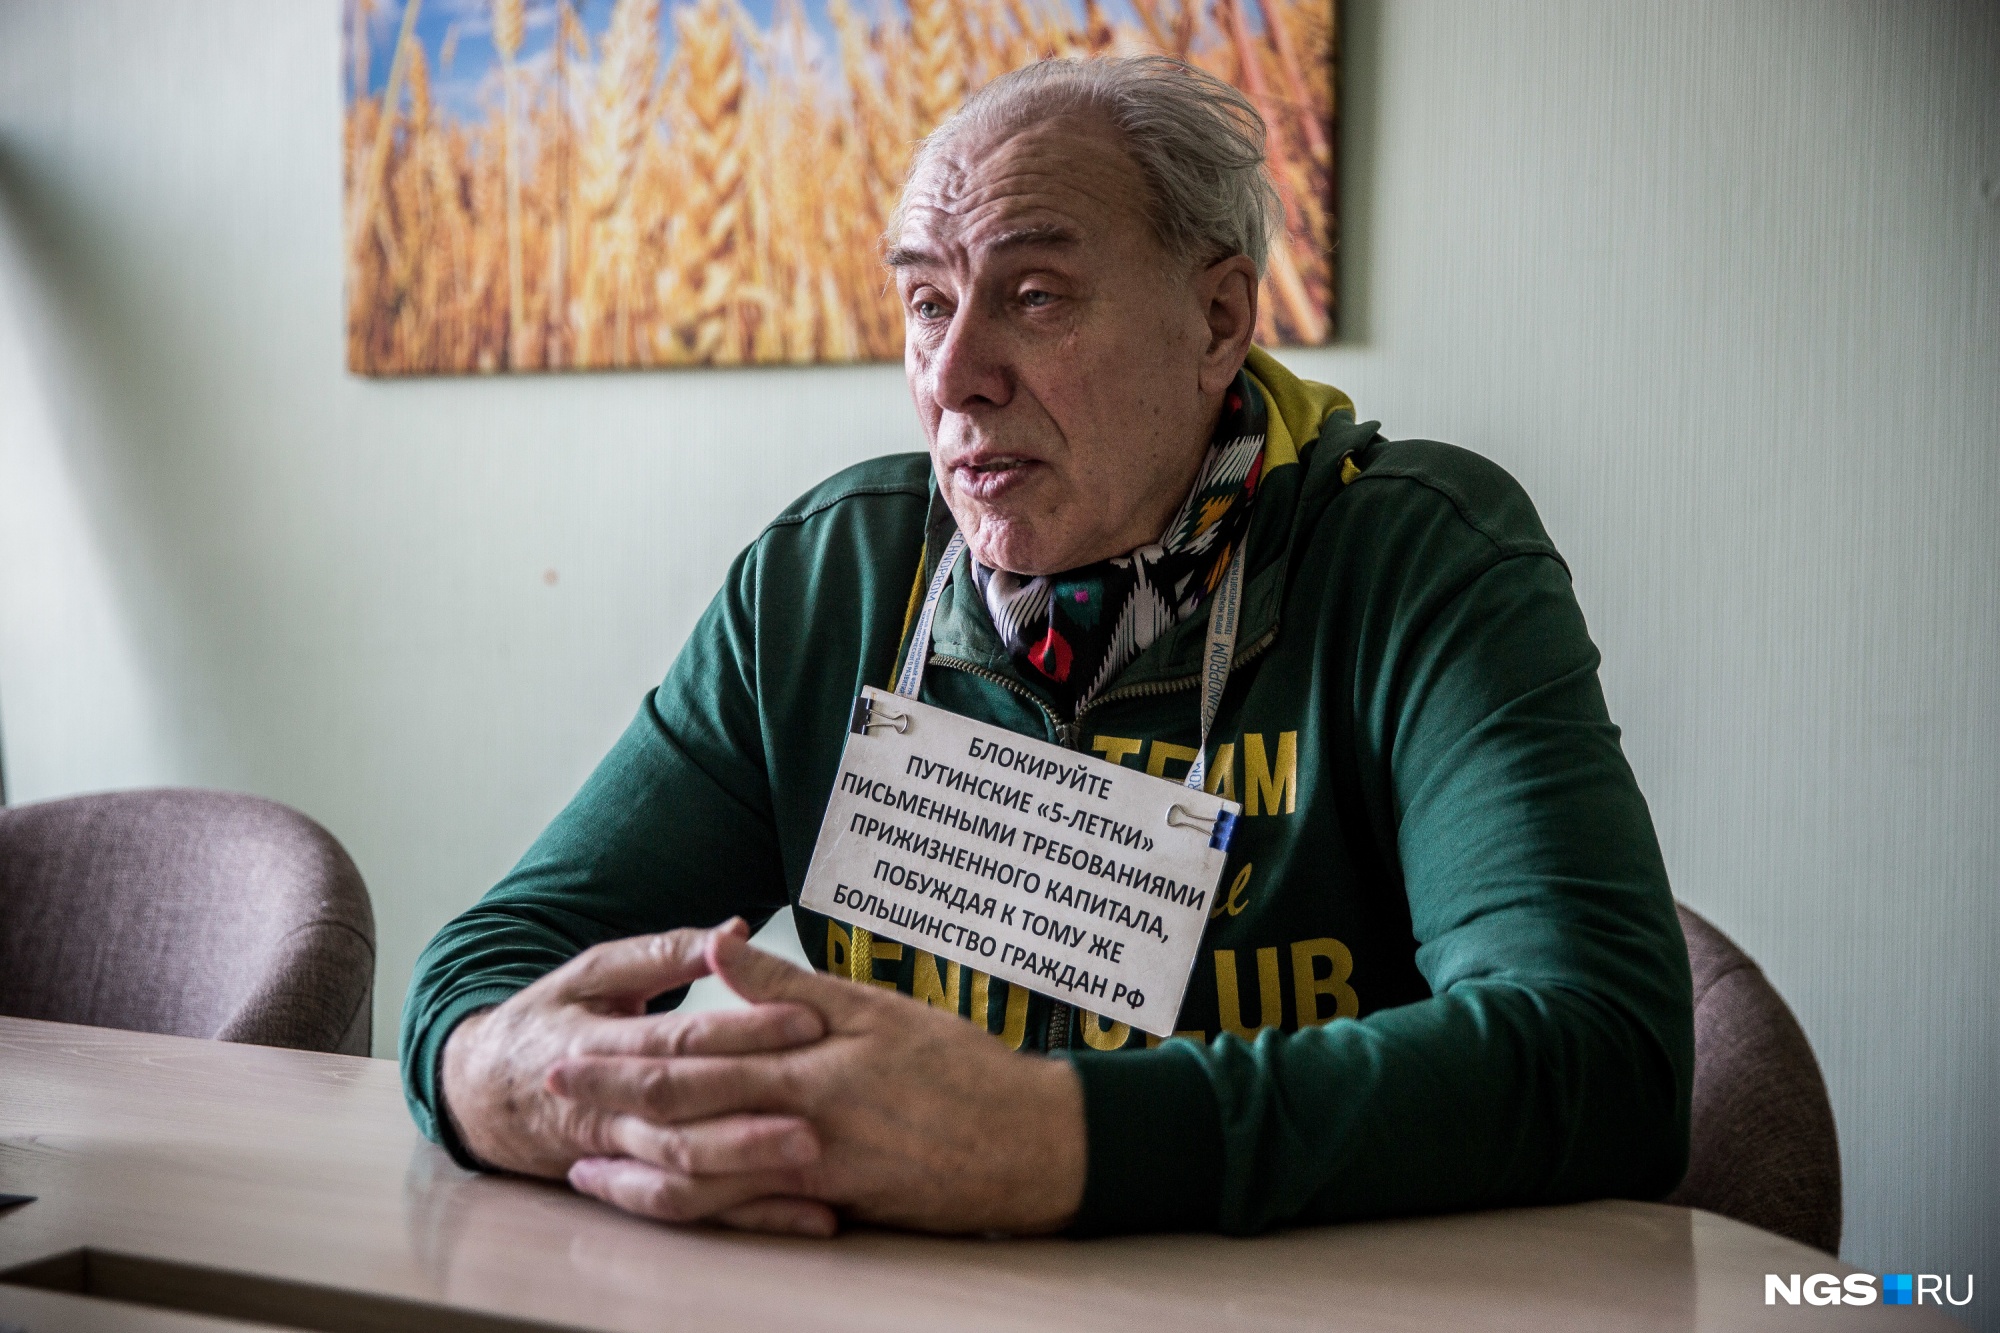 Юрий Мартыщенко называет себя волонтёром, который пытается призвать людей воспользоваться Конституцией